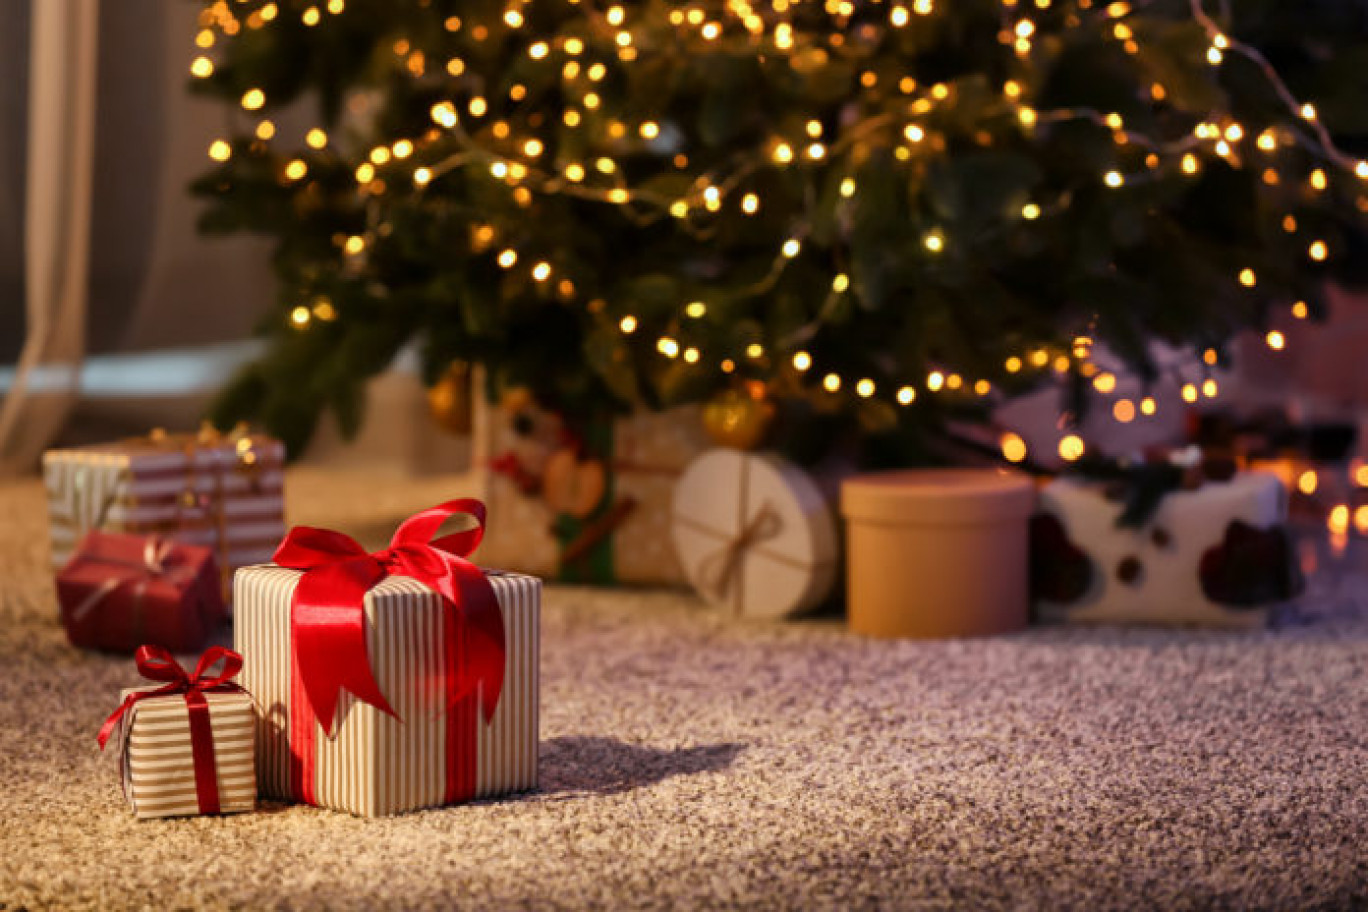 Qualité MOSL crée une plateforme pour les achats de Noël